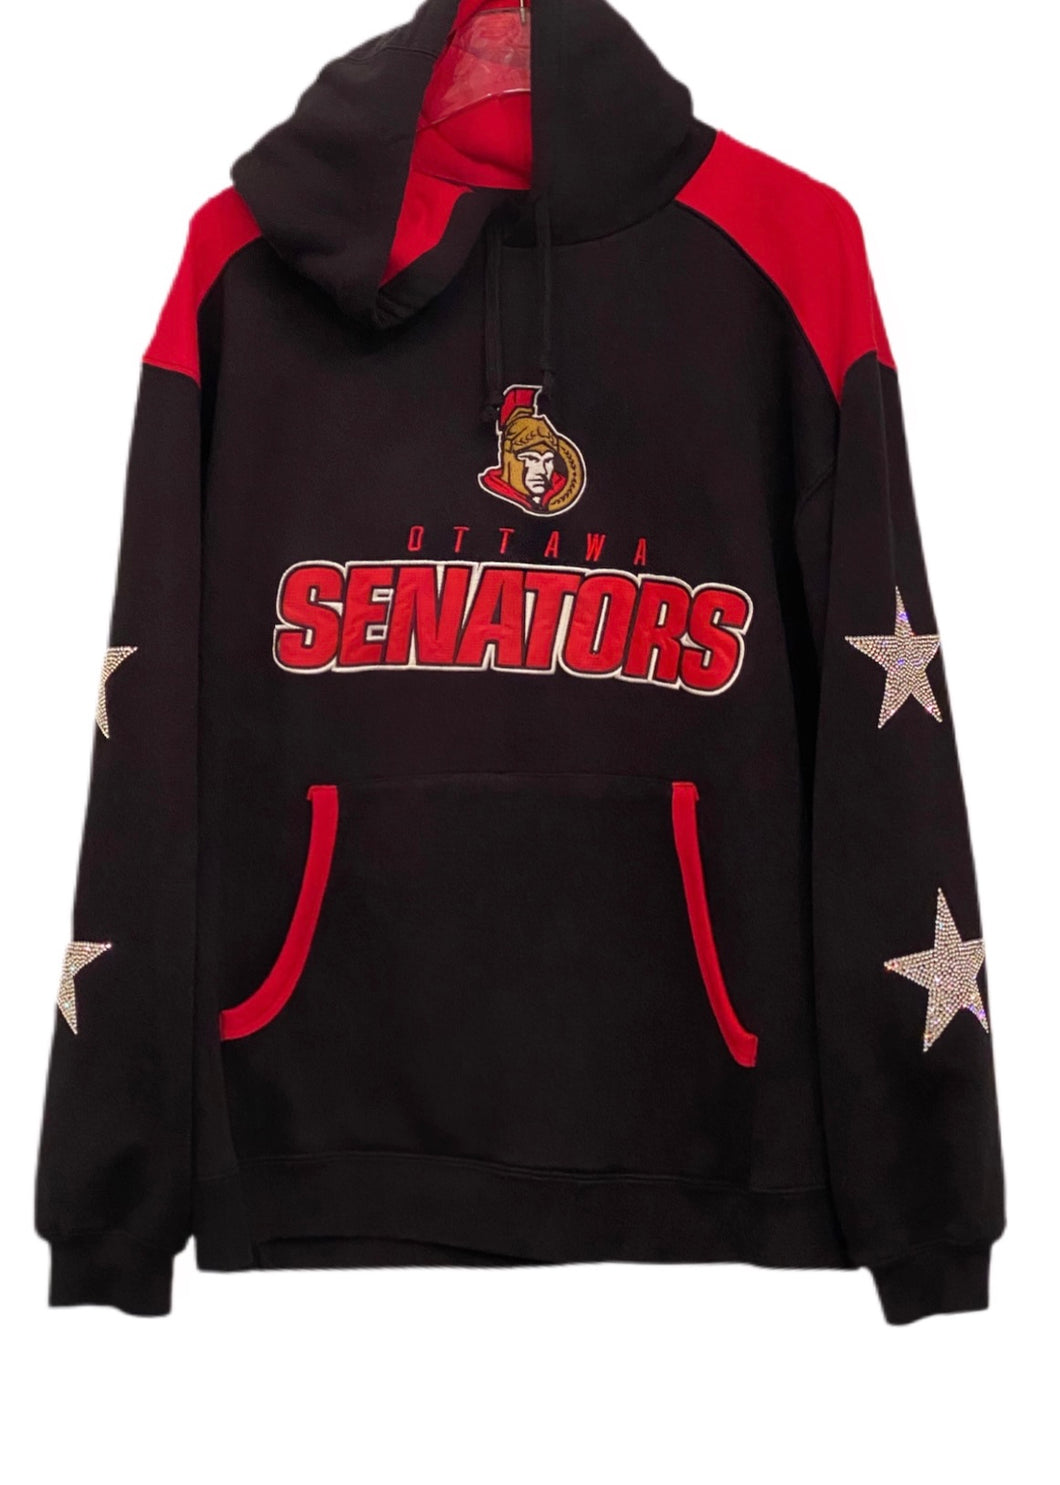 Ottawa Senators, Hockey One of a KIND Vintage Hoodie with Crystal Stars Design